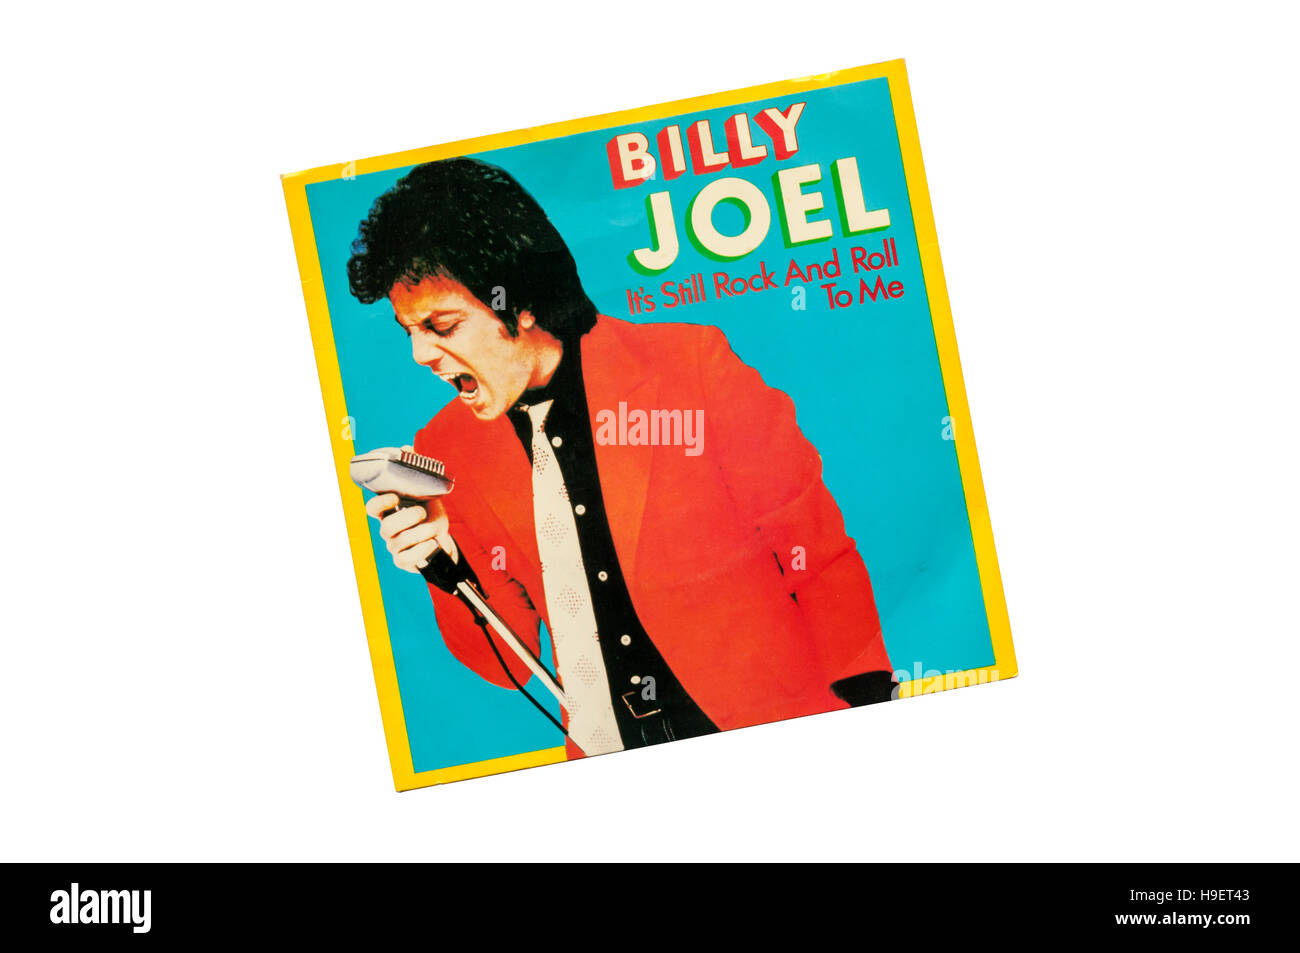 Es ist immer noch Rock And Roll to Me von Billy Joel erschien 1980. Stockfoto